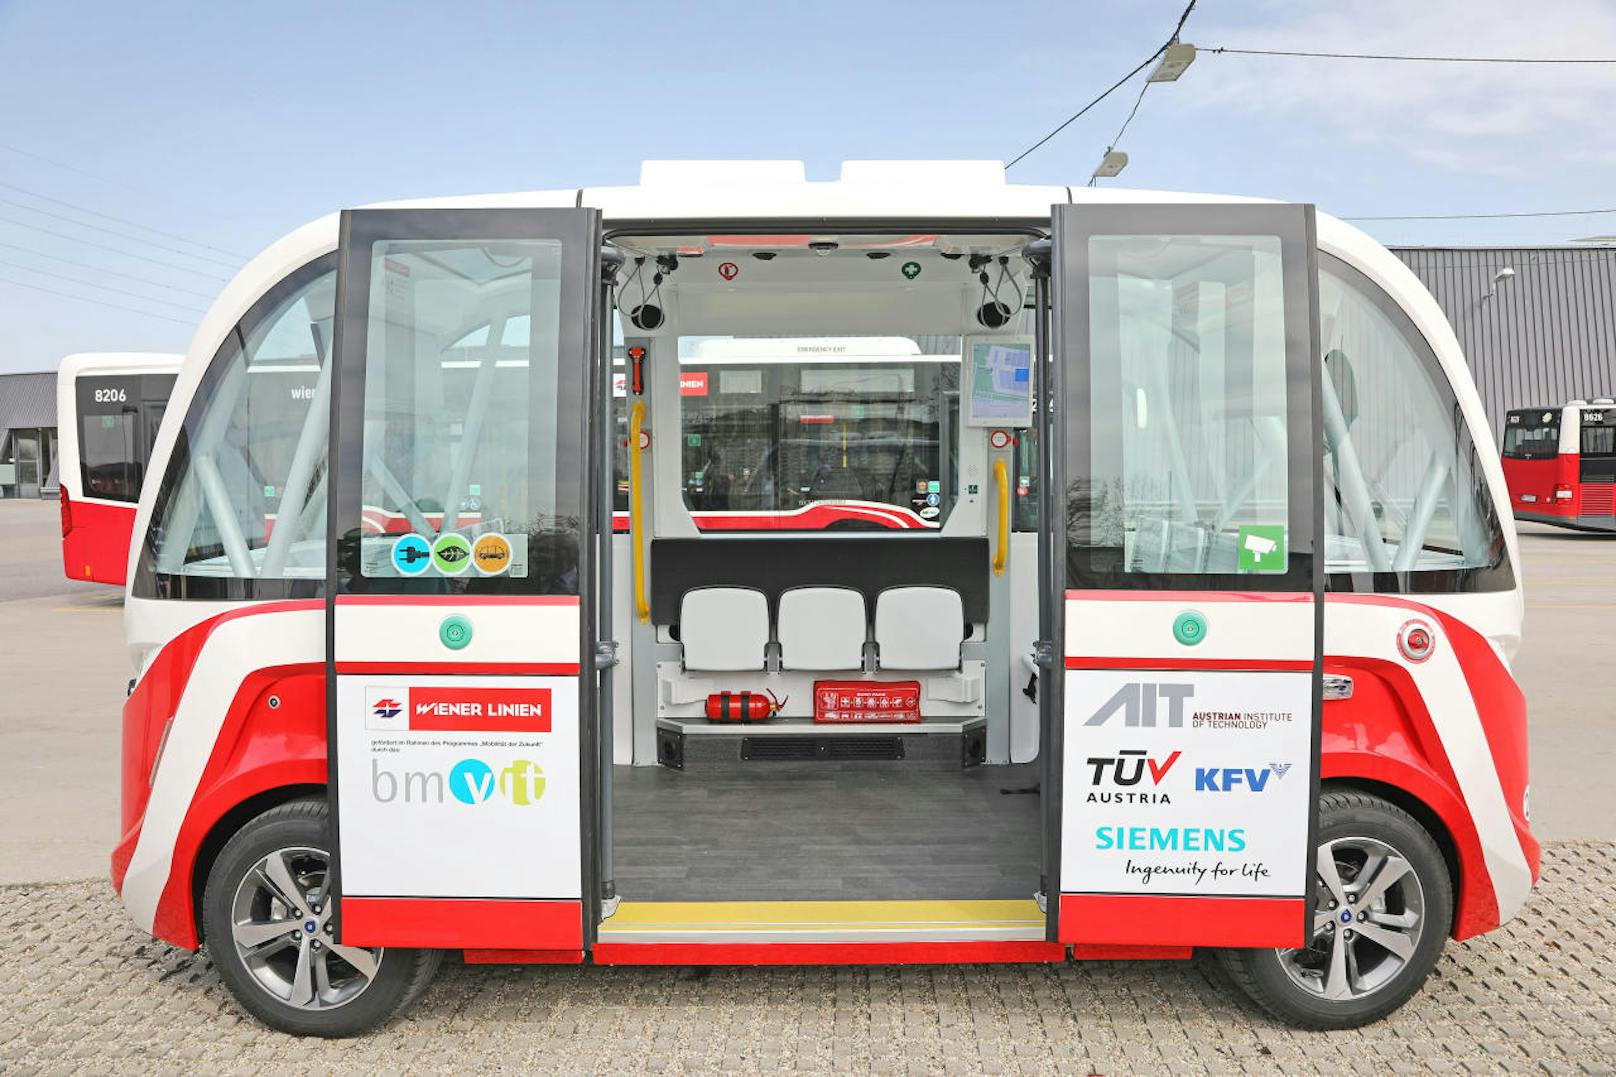 Nicht nur die neue U5 wird ohne Fahrer auskommen, auch lenkerlose Busse sind bei den Wiener Linien ein Thema. Am Mittwoch wurde einer der e-Busse vorgestellt.